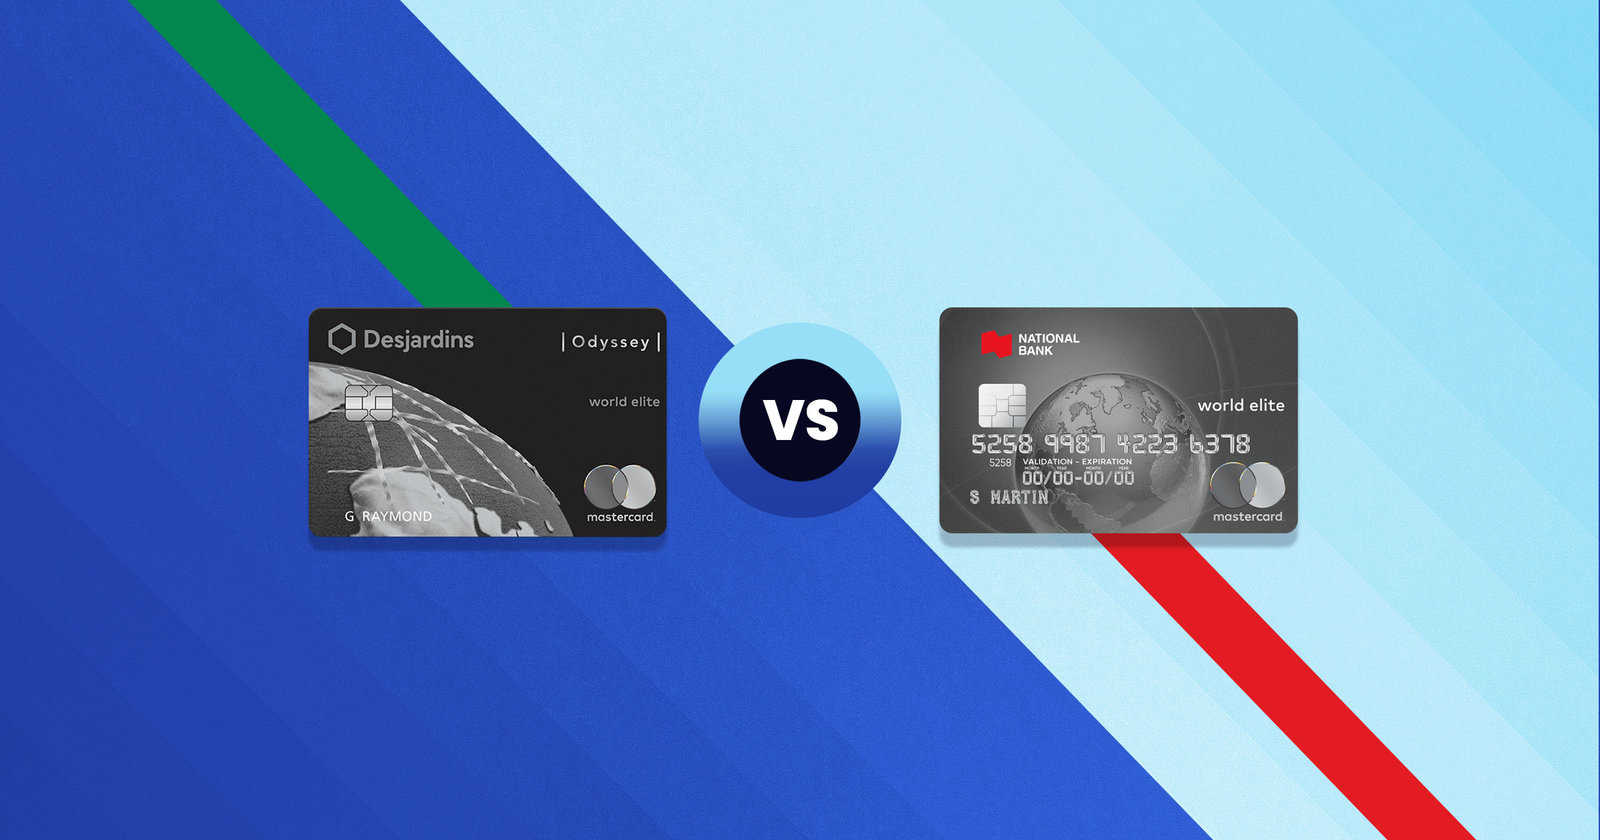 Odyssey World Elite Mastercard Desjardins and National Bank World Elite Mastercard